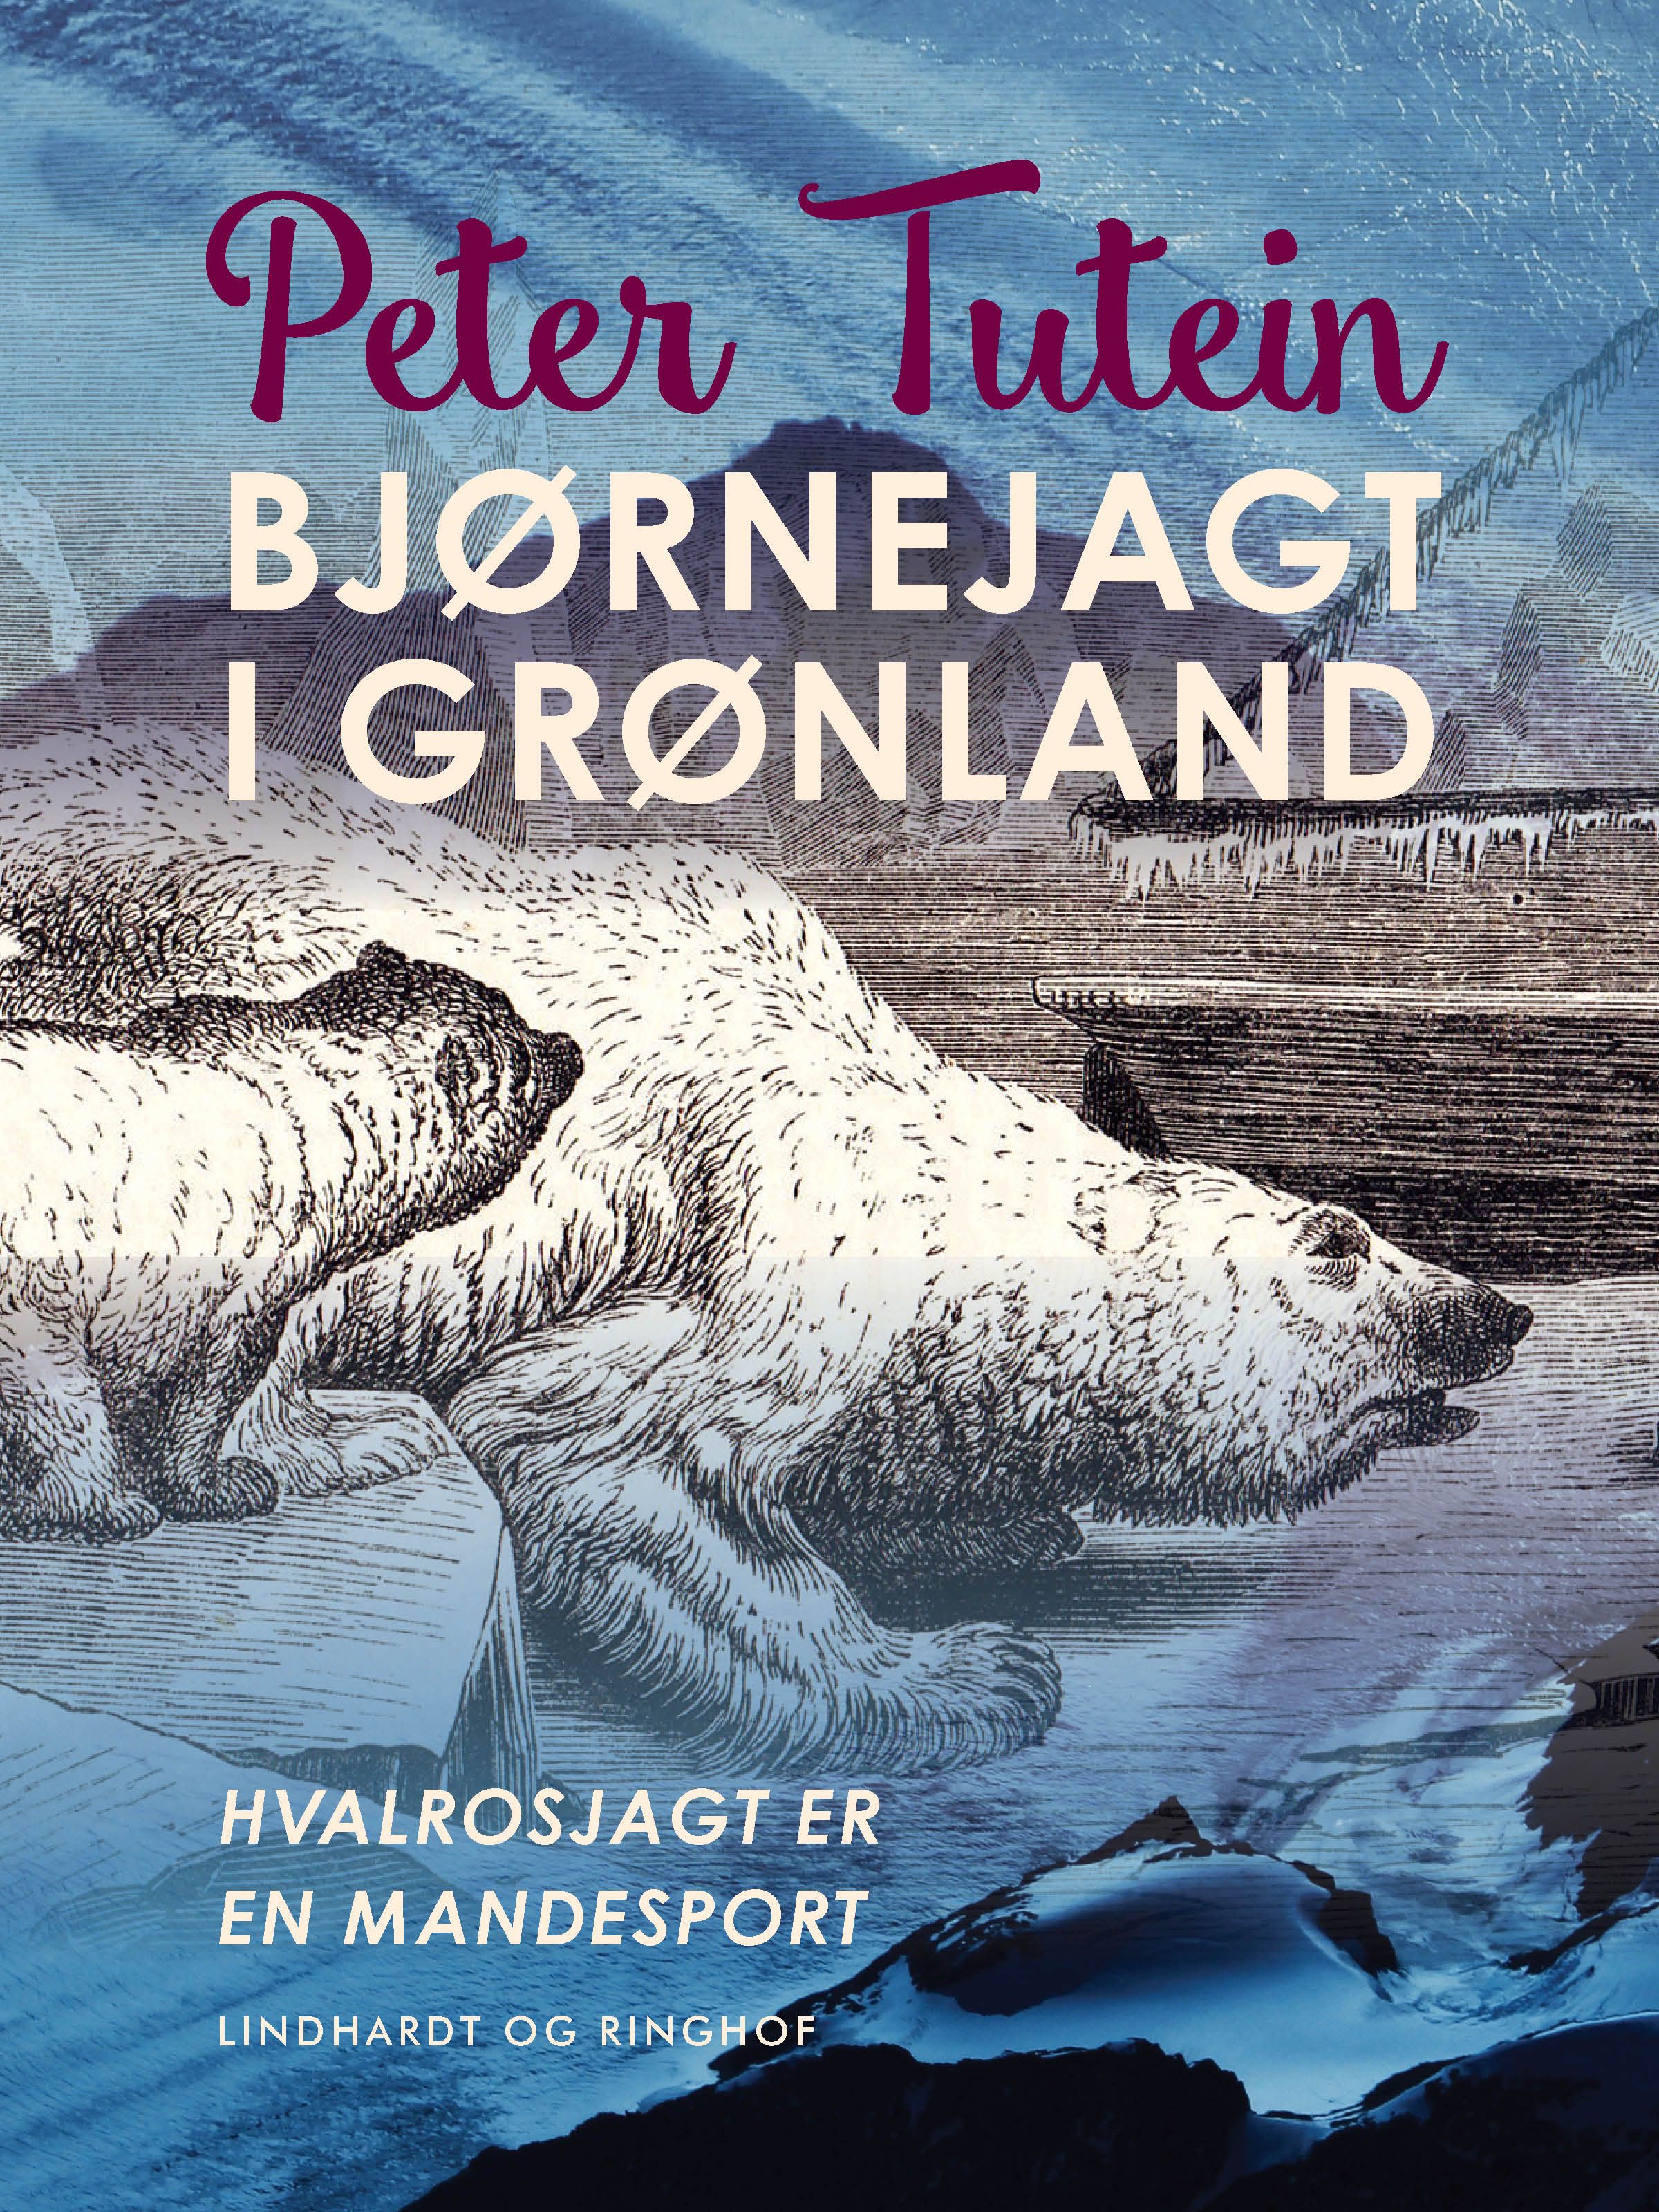 Bjørnejagt i Grønland. Hvalrosjagt er en mandesport, e-bok av Peter Tutein